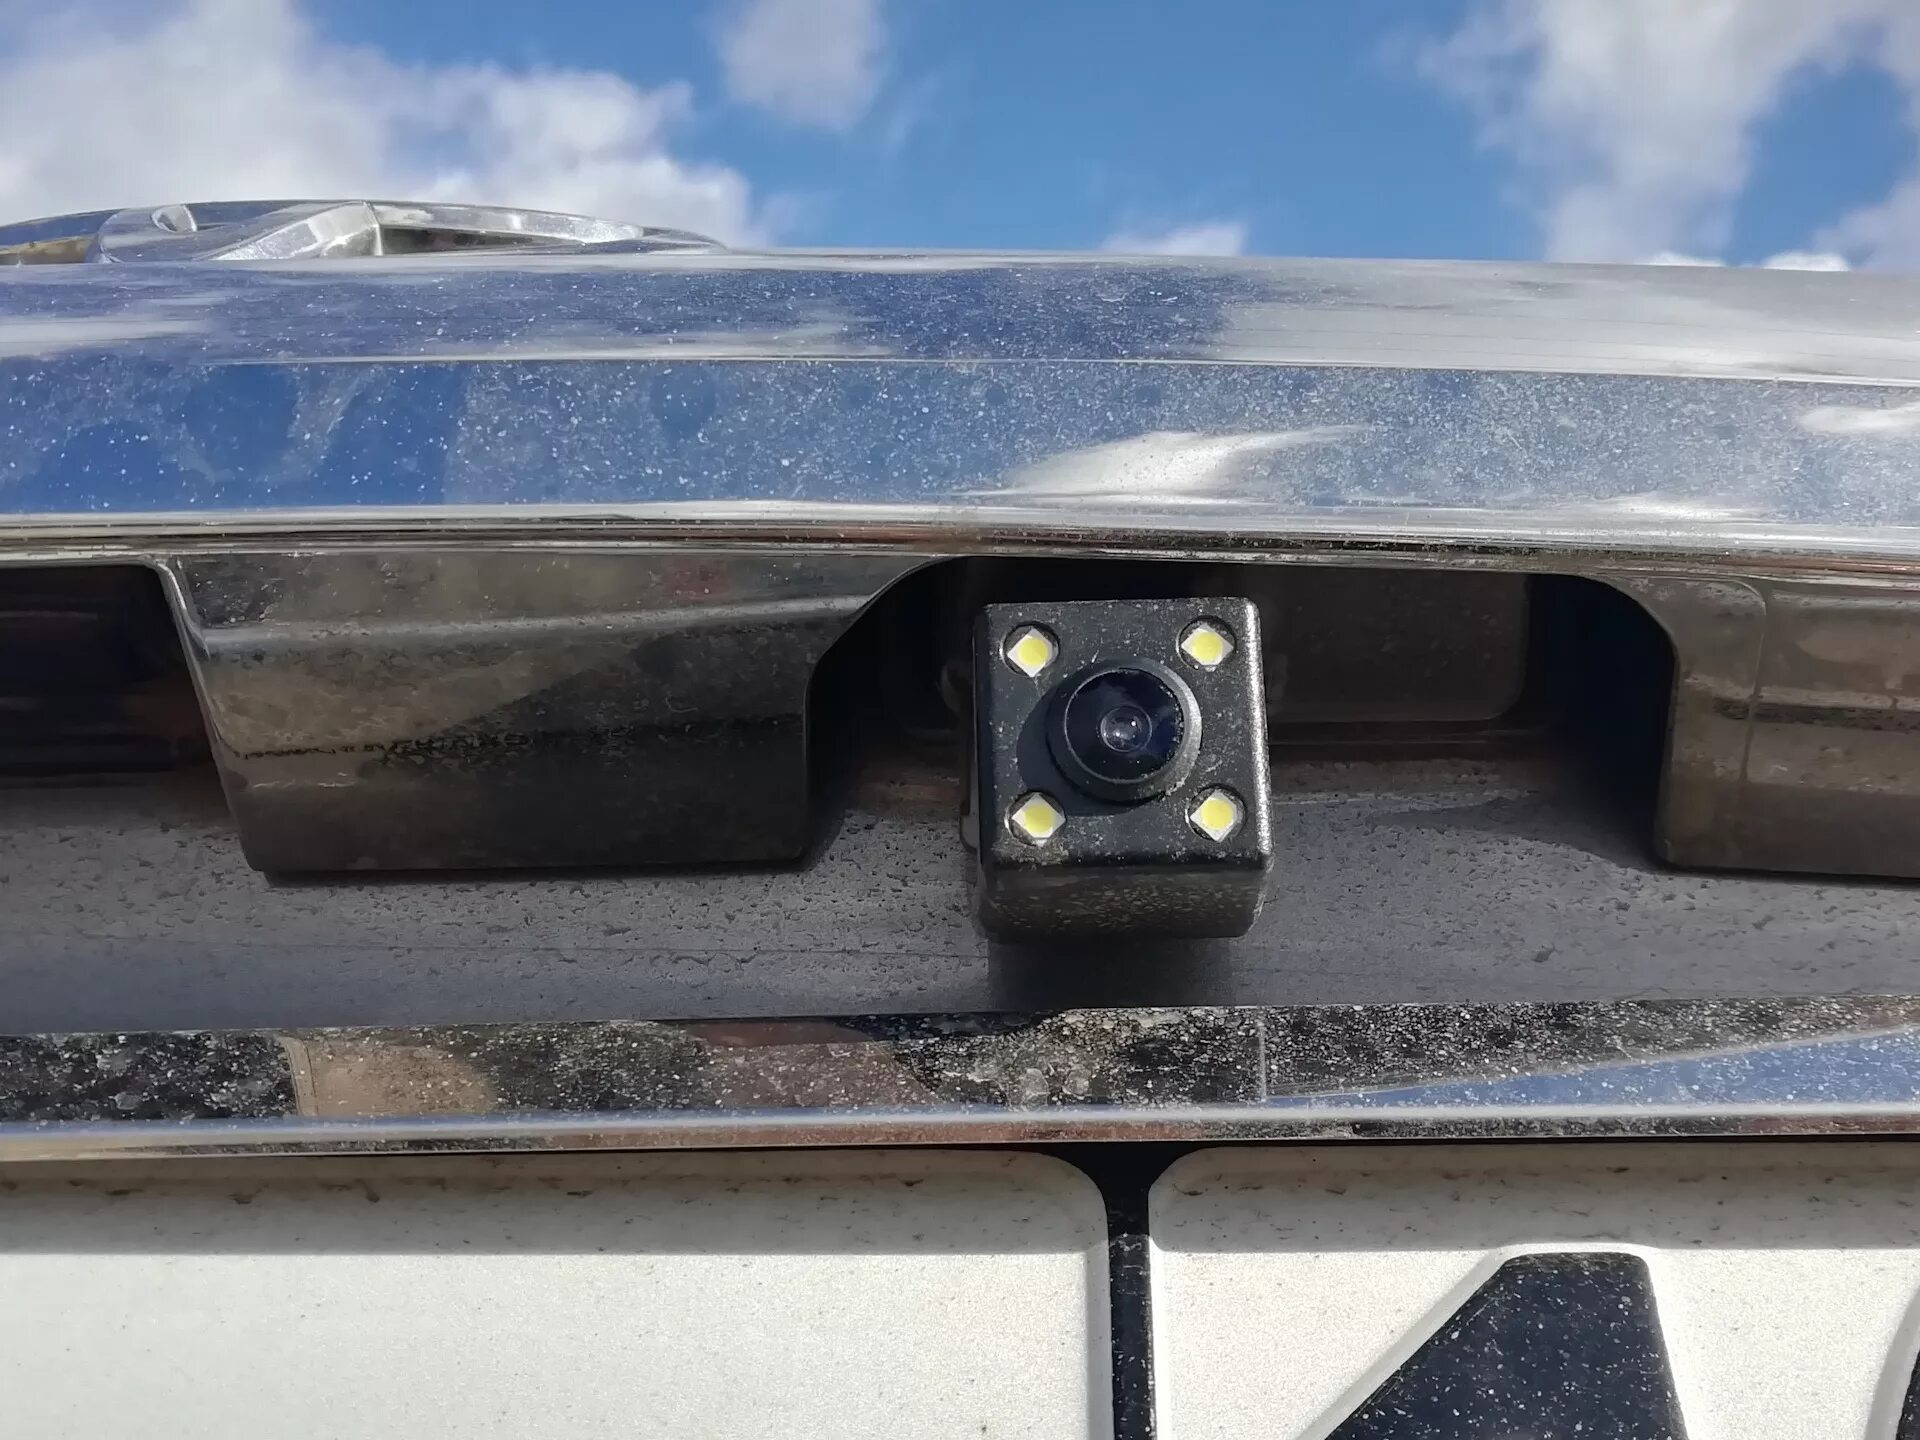 Установить камеры на автомобиль